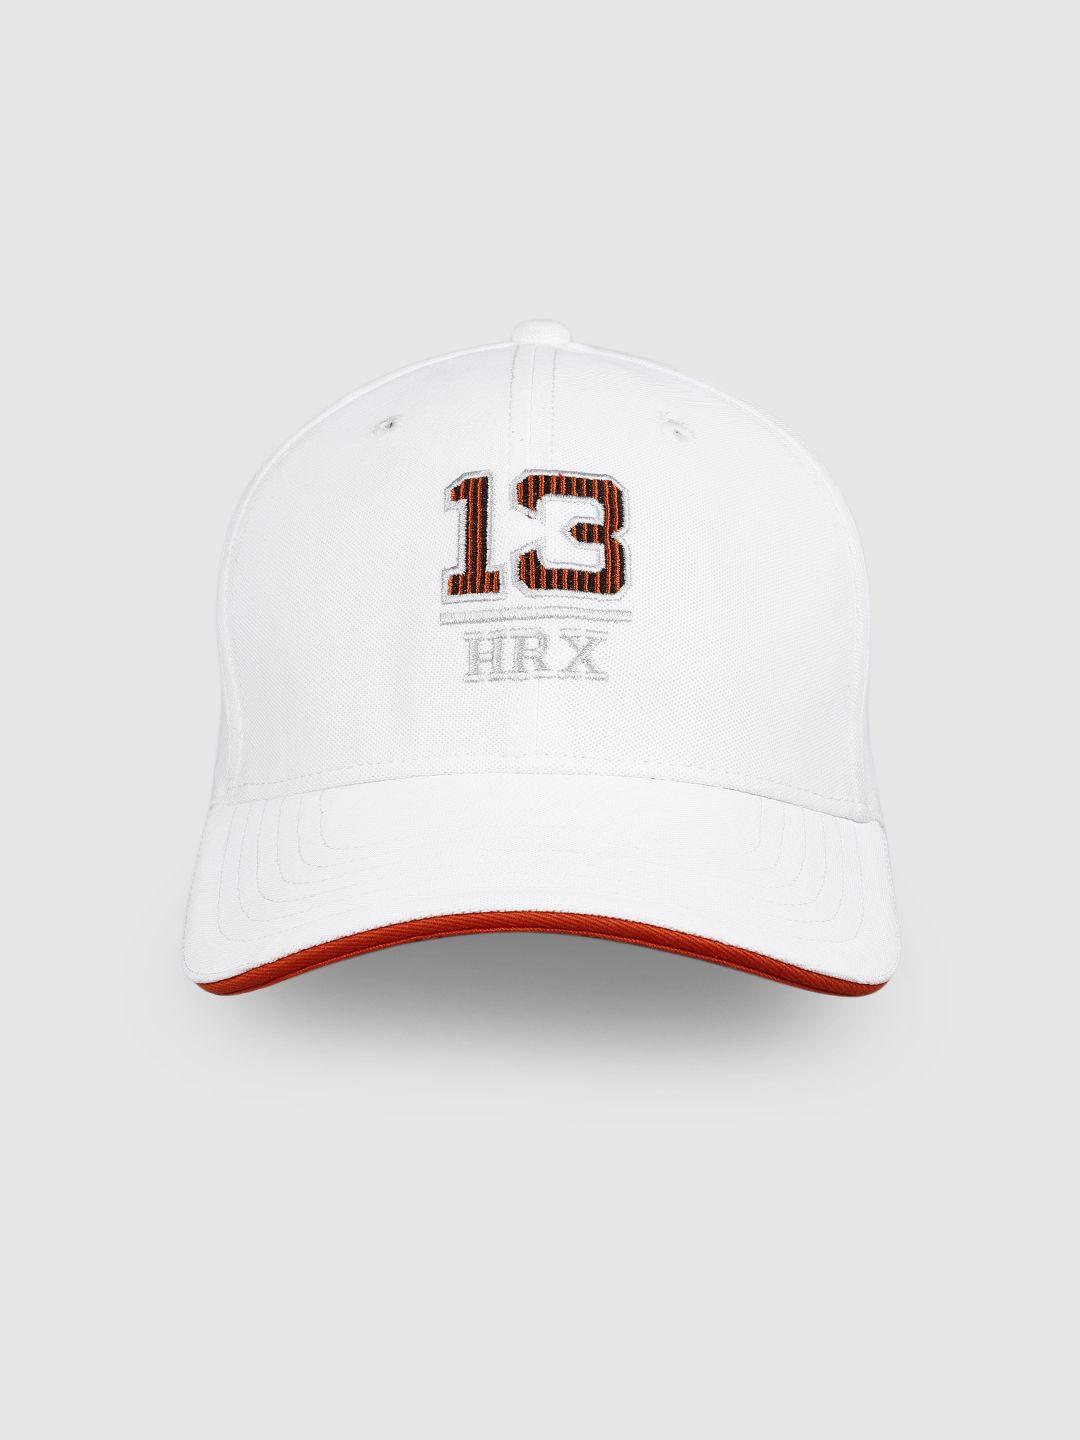 hrx by hrithik roshan unisex white embroidered baseball cap